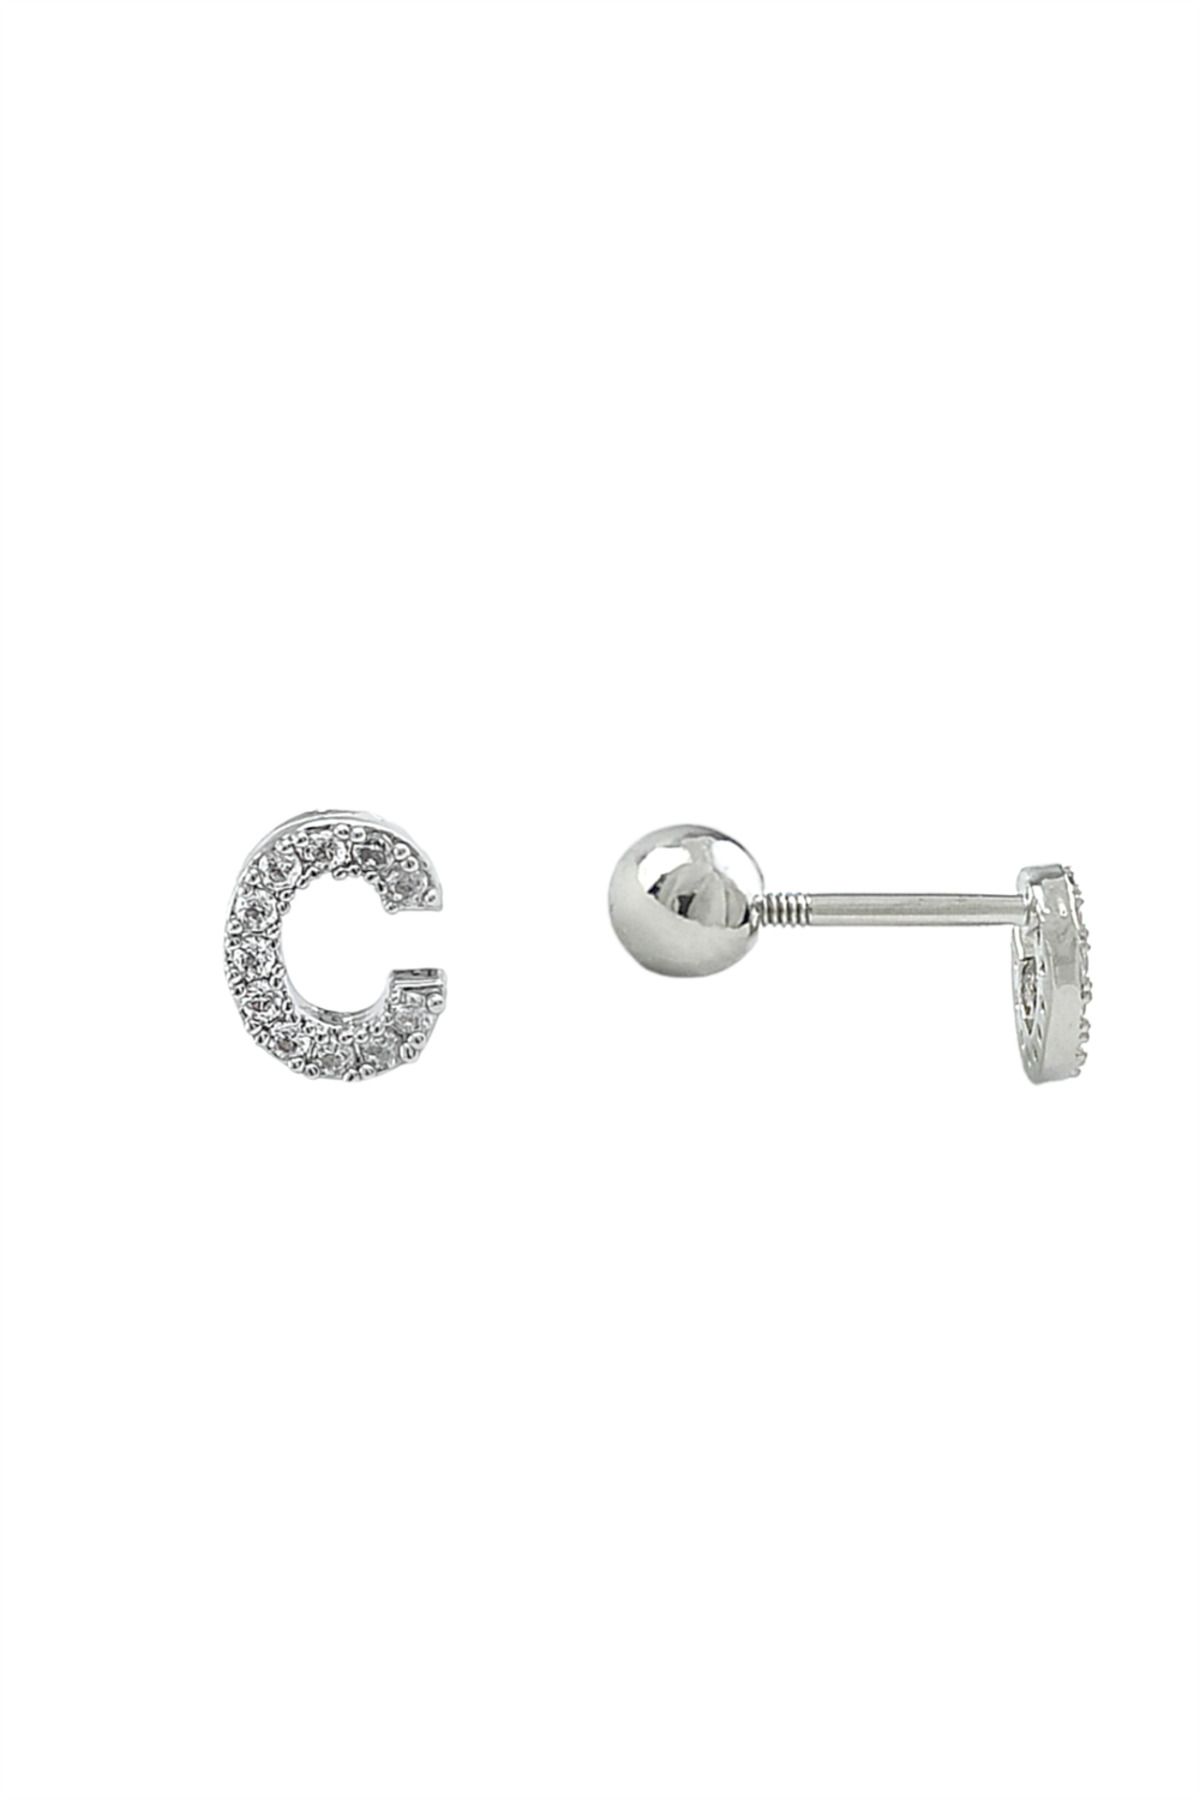 Çlk Accessories Gümüş Renk Harf Piercing - C HarfPiercing